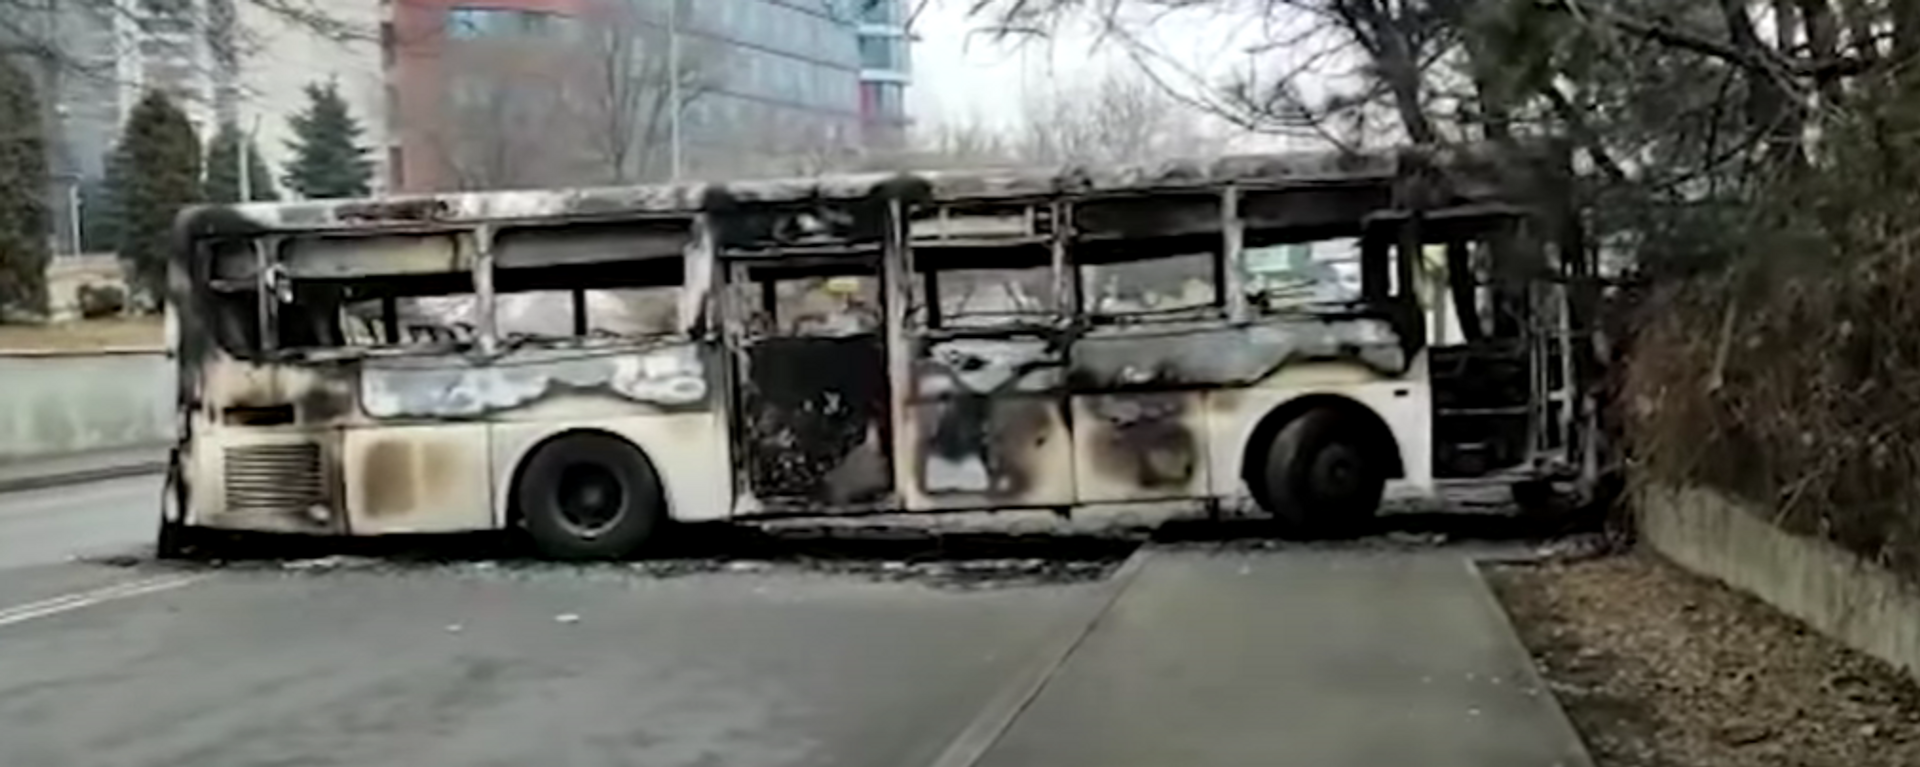 Алматы сейчас: сожженные автобусы, сгоревшее здание администрации, пустые улицы - Sputnik Абхазия, 1920, 08.01.2022